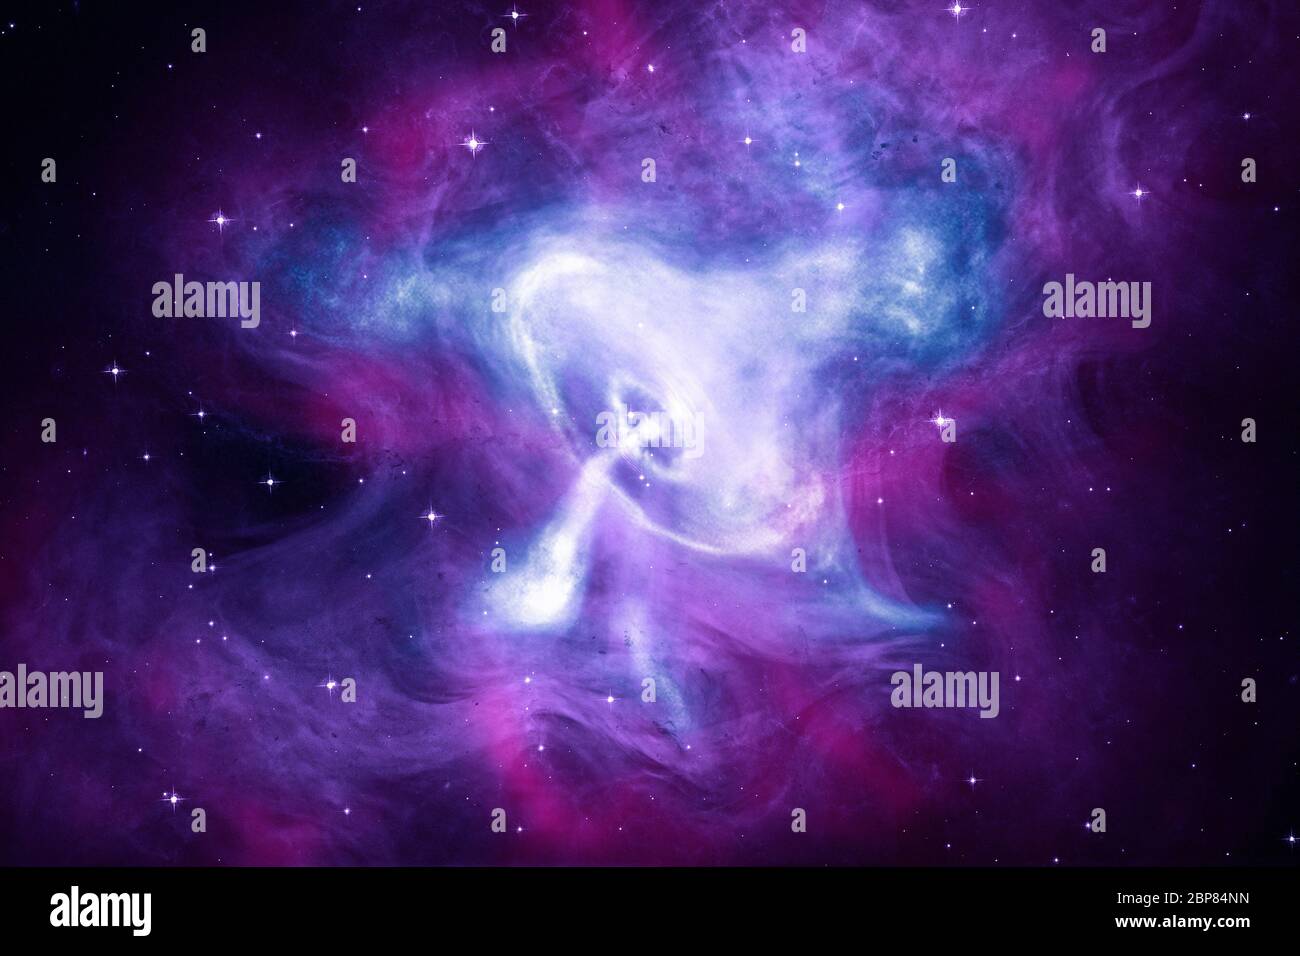 Ein neues Komposit-Bild des Krabbennebels zeigt Röntgenstrahlen von Chandra (blau und weiß), optische Daten von Hubble (lila) und Infrarotdaten von Spitzer (rosa). Chandra hat wiederholt beobachtet, die Krabbe, da das Teleskop ins All gestartet wurde im Jahr 1999. Der Krabbennebel wird von einem schnell drehenden, hochmagnetisierten Neutronenstern, einem Pulsar, angetrieben. Die Kombination aus schneller Rotation und einem starken Magnetfeld in der Krabbe erzeugt ein intensives elektromagnetisches Feld, das Strahlen aus Materie und Antimaterie erzeugt, die sich vom Nord- und Südpol weg bewegen und einen intensiven Wind erzeugen, der ou fließt Stockfoto